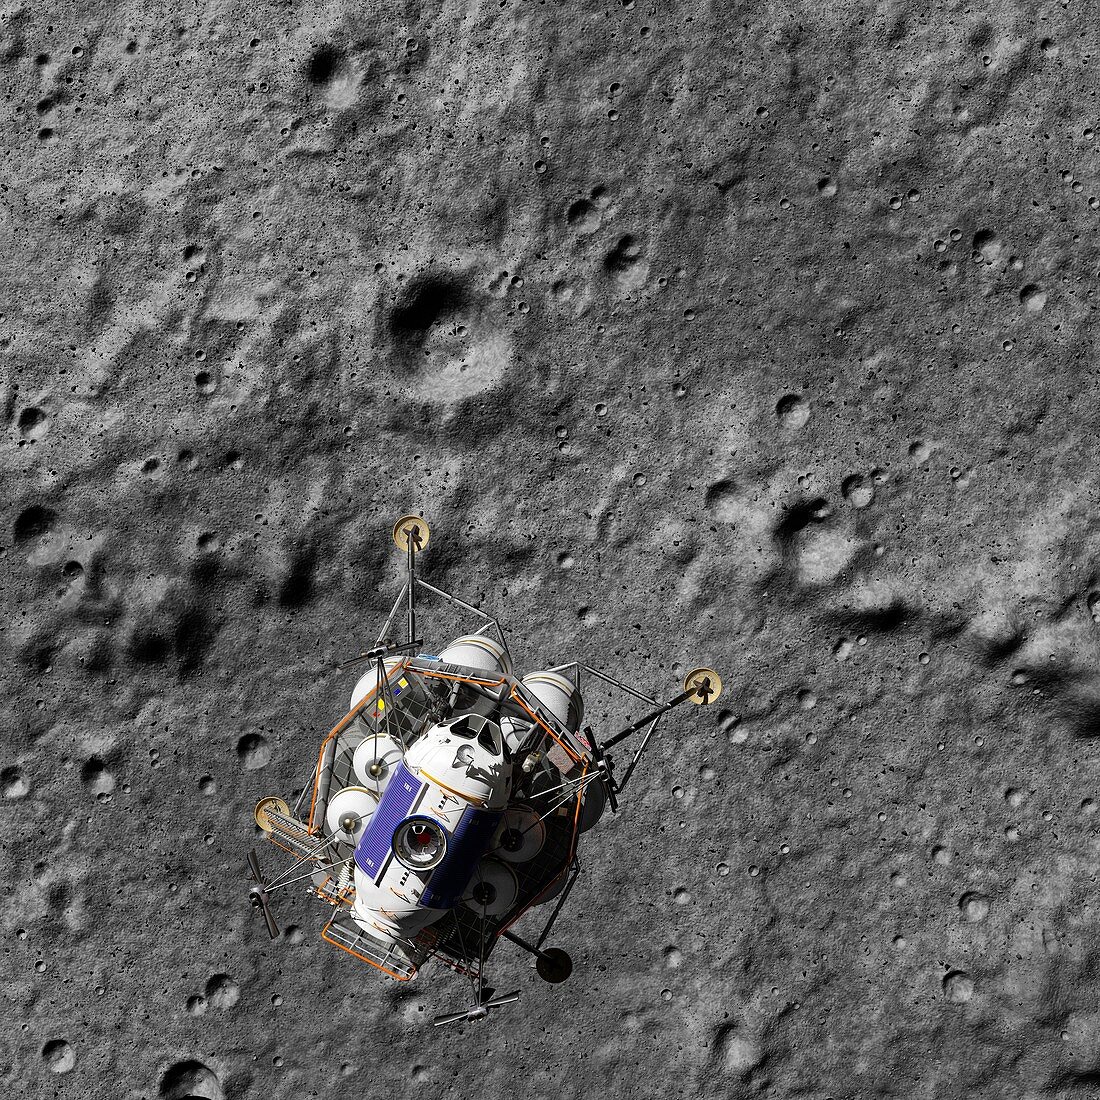 Lunar lander over Moon, illustration